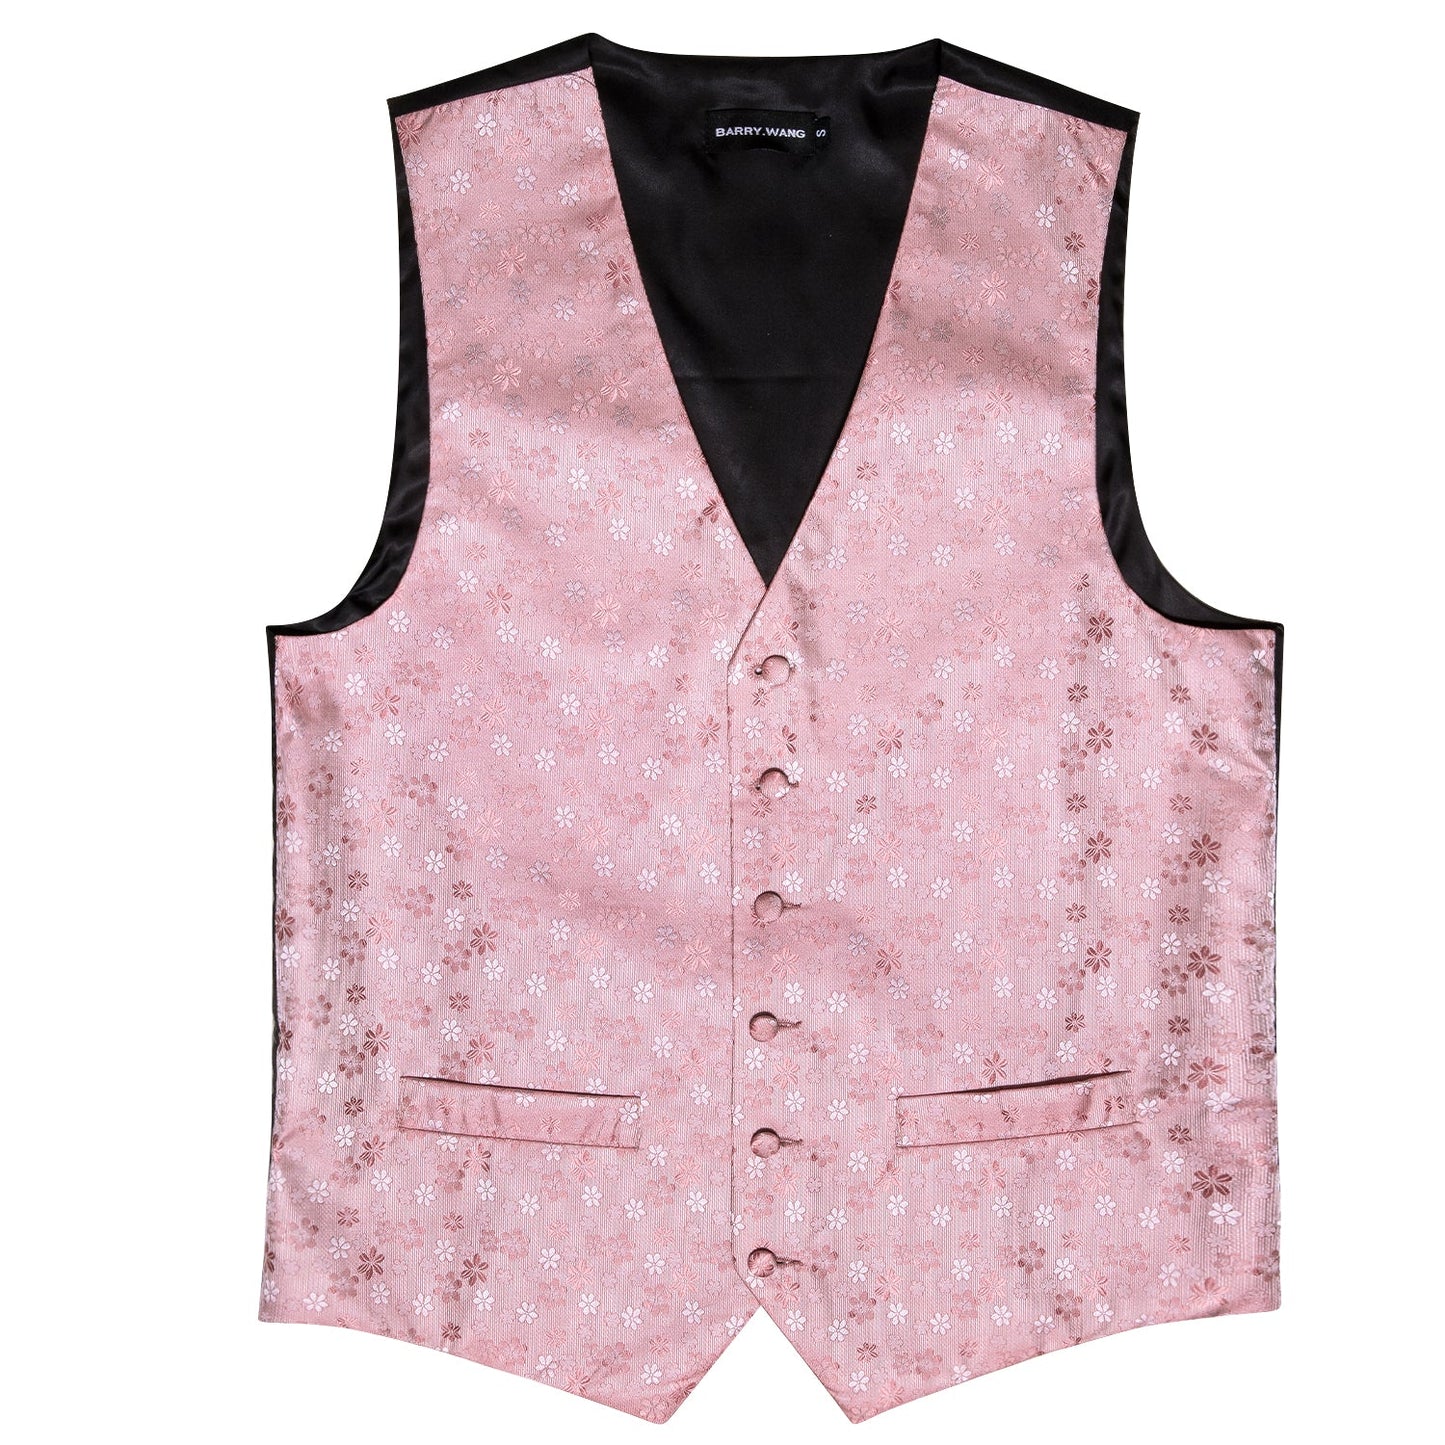 Designer Floral Waistcoat Silky Novelty Vest Pink James